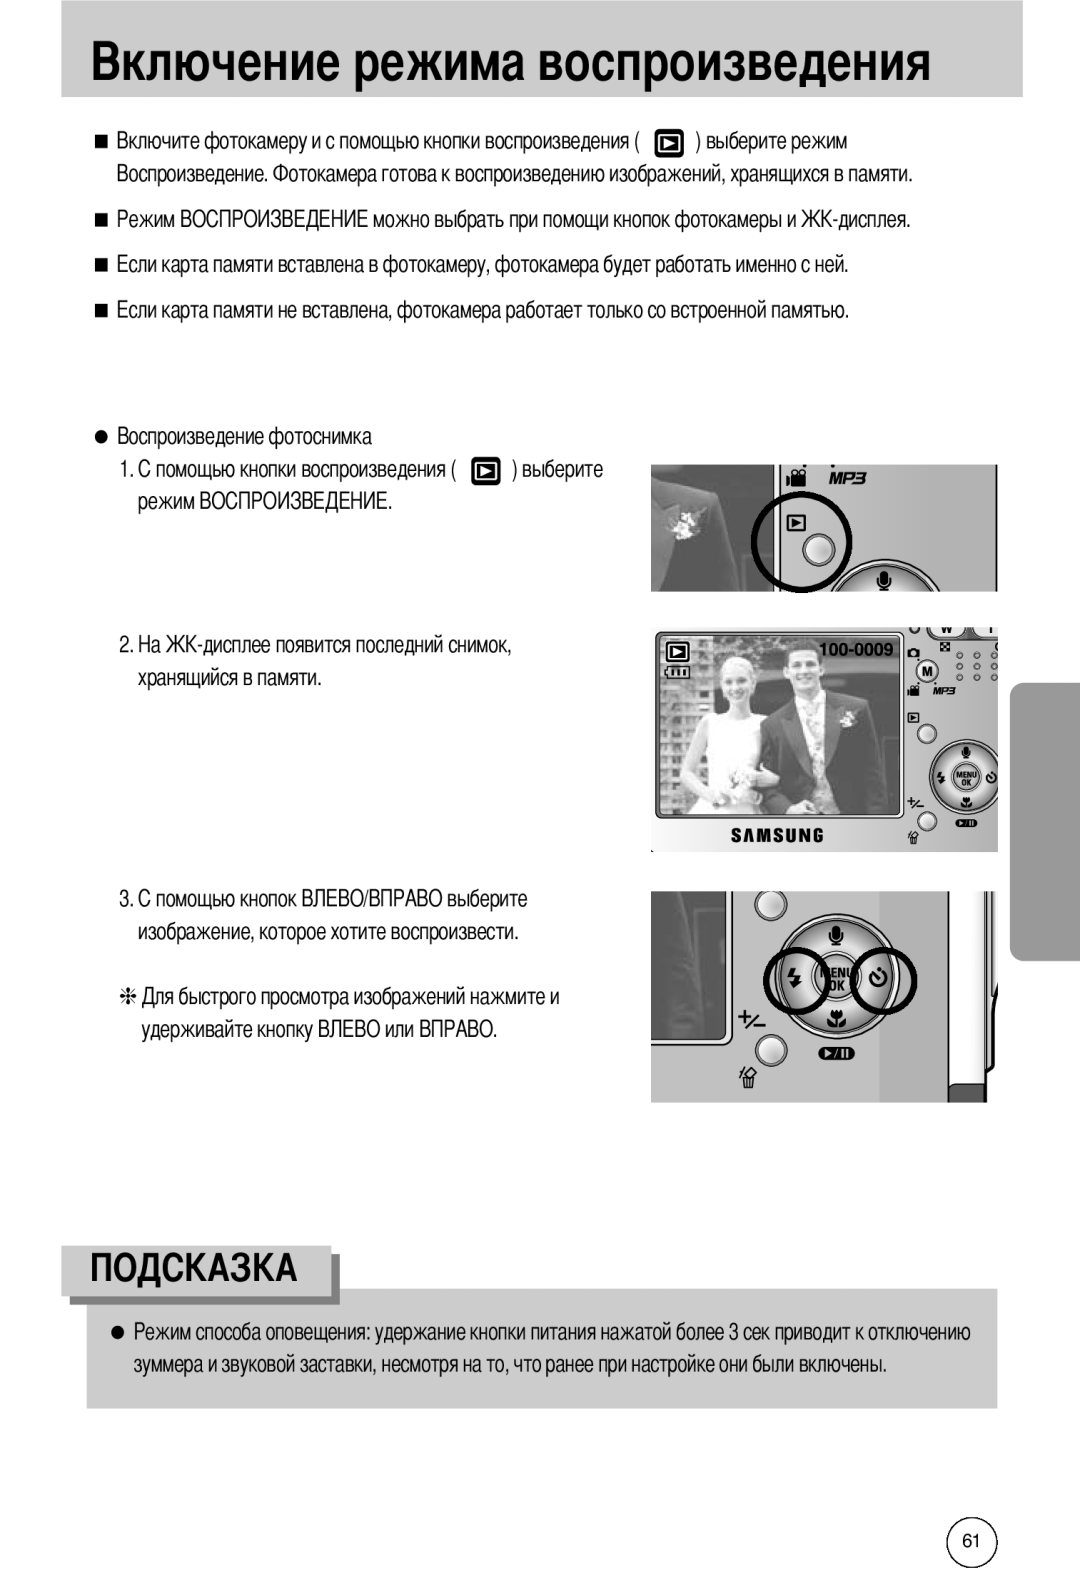 Samsung EC-I50ZZBBB/DE manual режим, хранящийся в памяти, изображение, которое хотите воспроизвести, удерживайте кнопку 